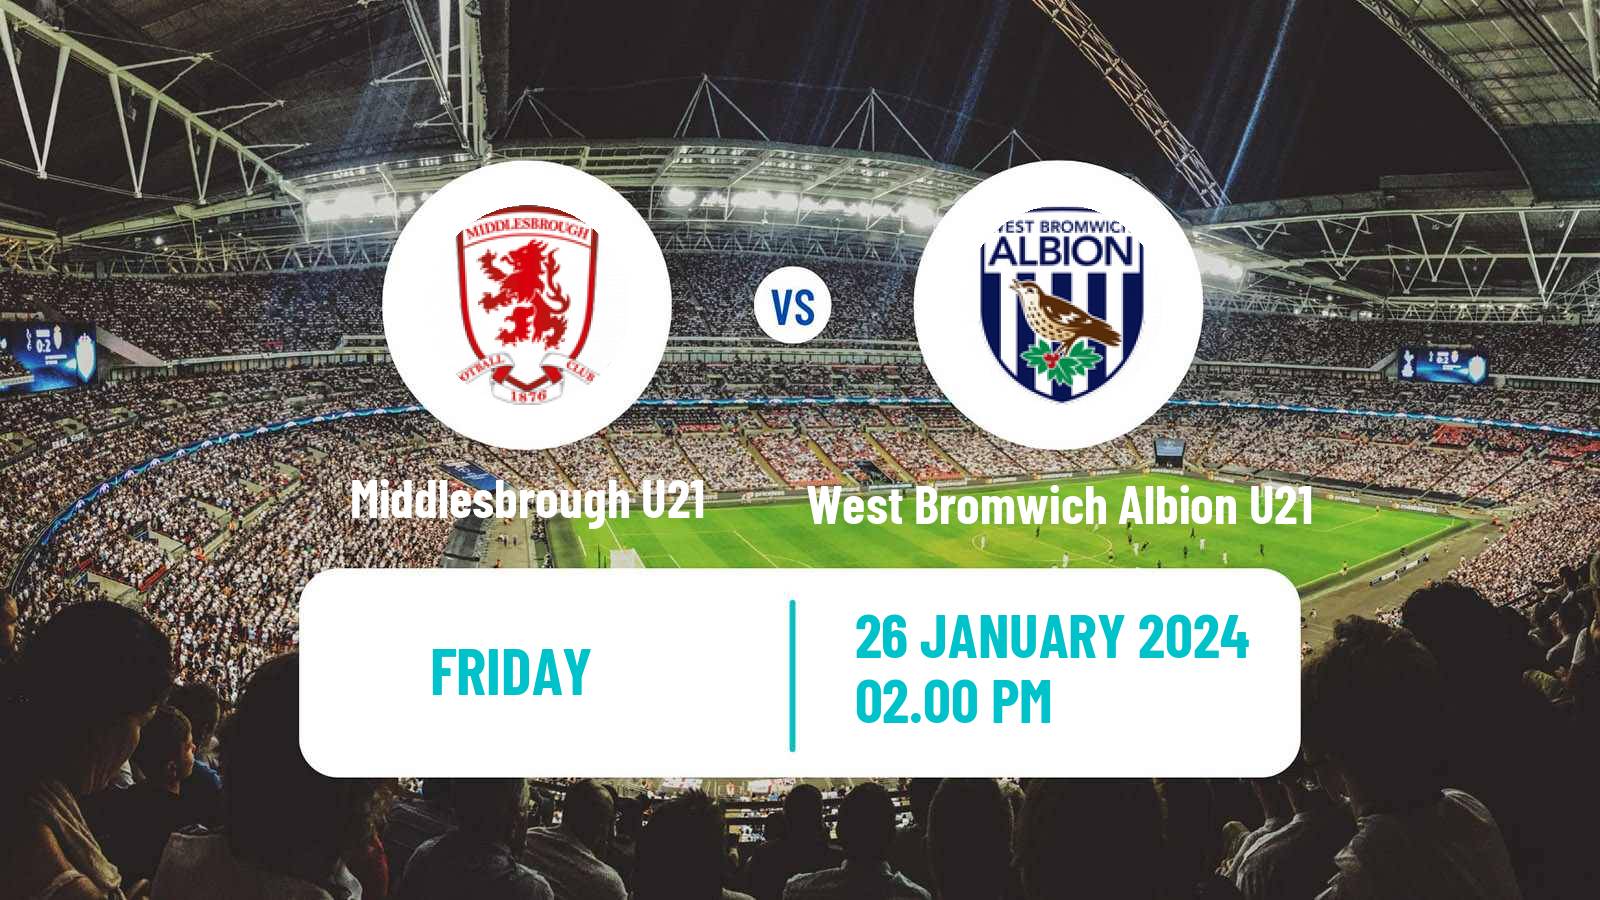 Soccer English Premier League 2 Middlesbrough U21 - West Bromwich Albion U21